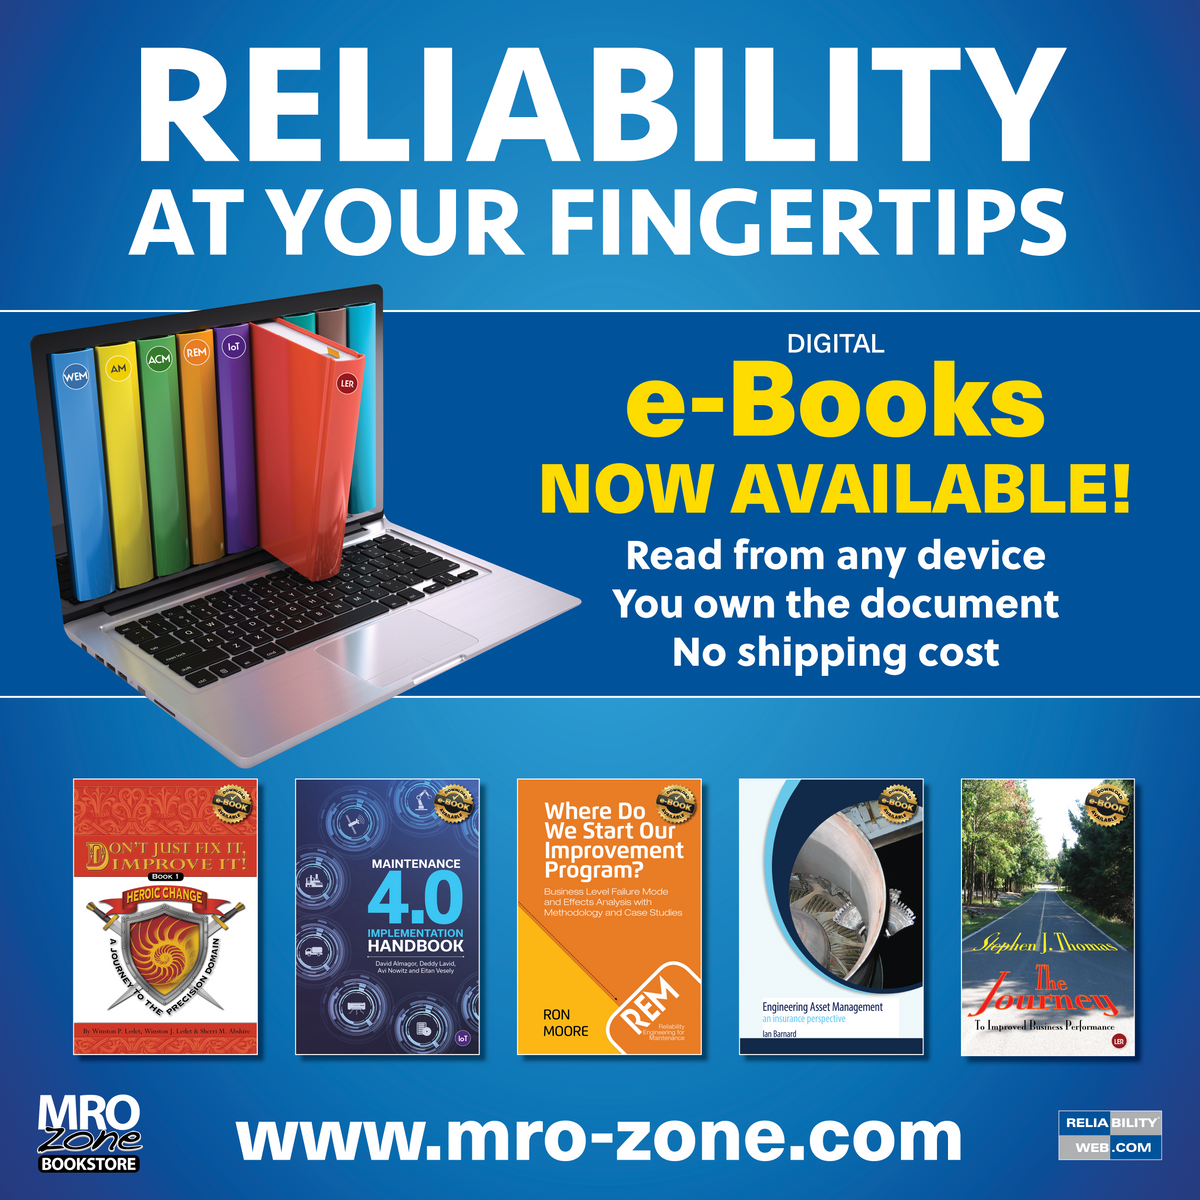 Reliabilityweb.com Launches The MRO-Zone E-Bookstore: an E-Bookstore for Reliability and Asset Management Professionals